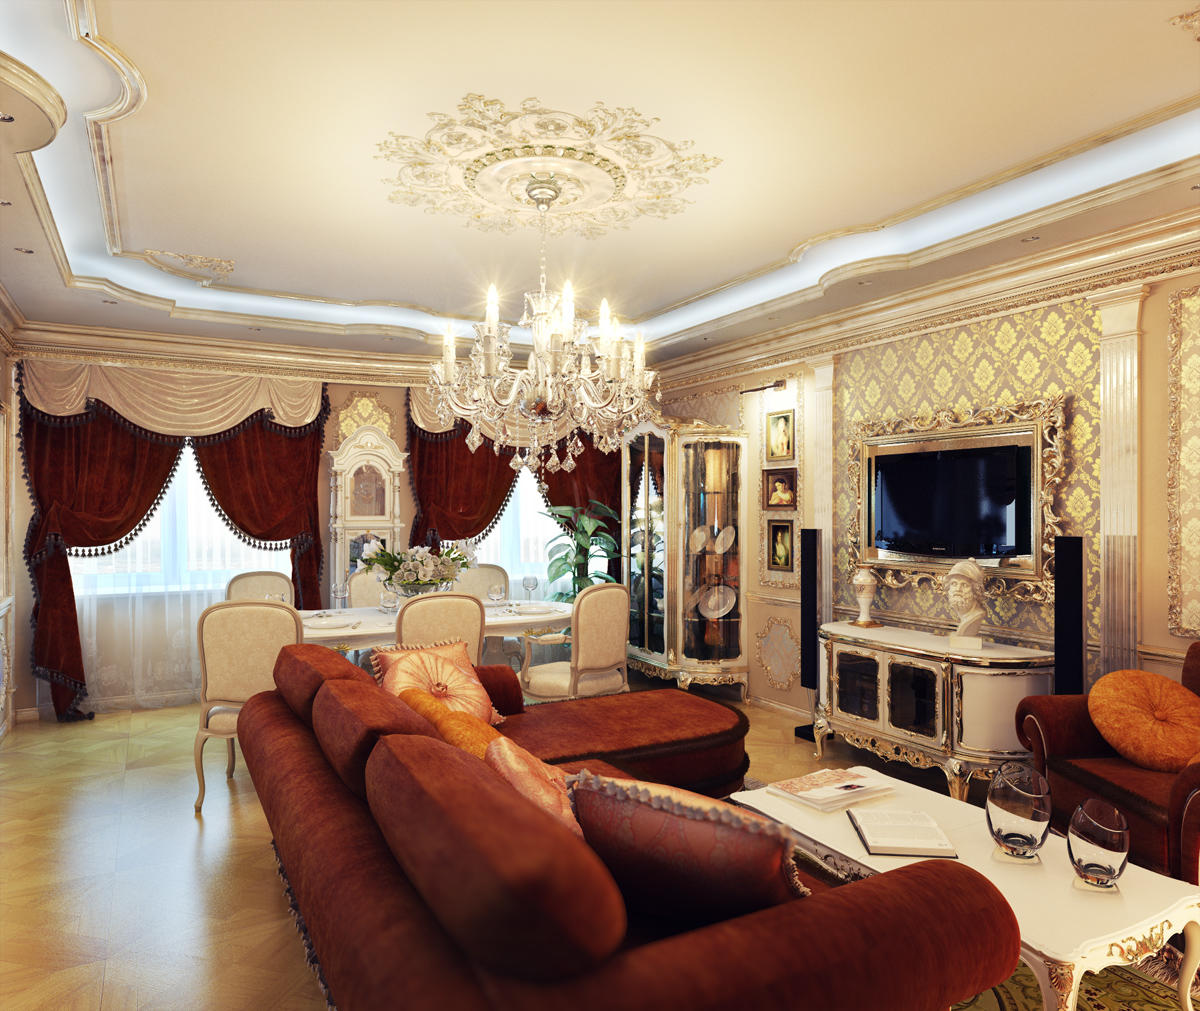 Camerele de zi în stil clasic sunt realizate în stil alb sau bej, completând interiorul cu mobilier de culori vii